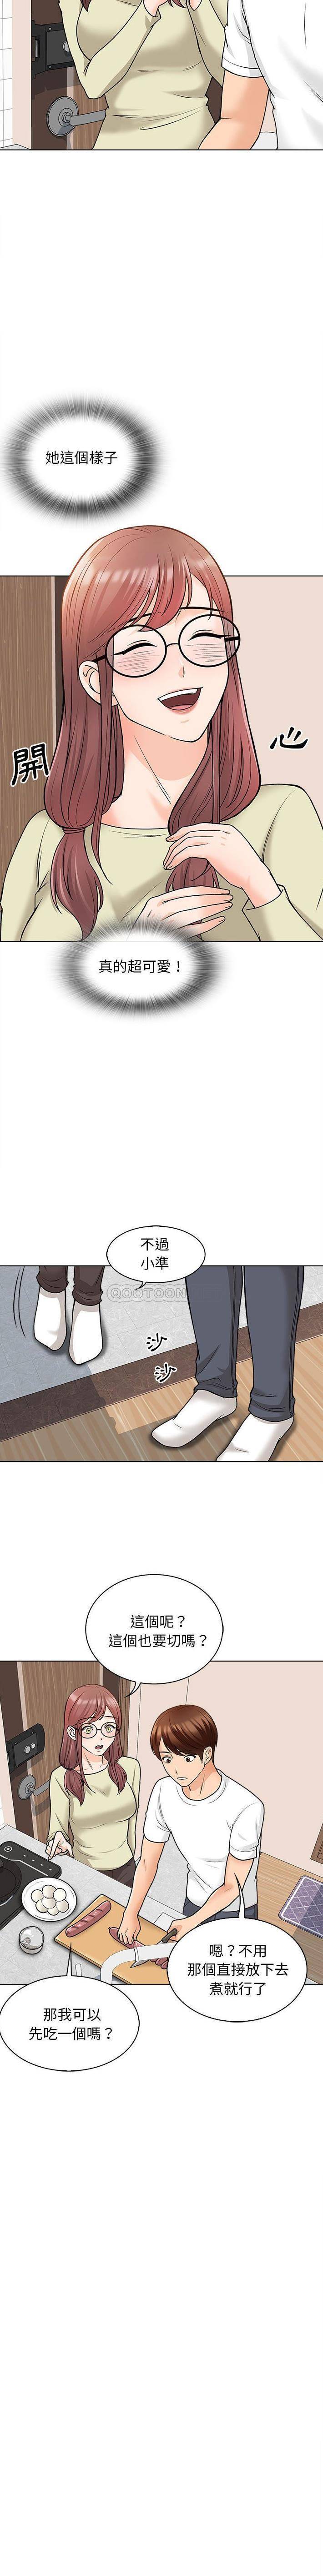 韩国污漫画 幸福公寓 第11话 3